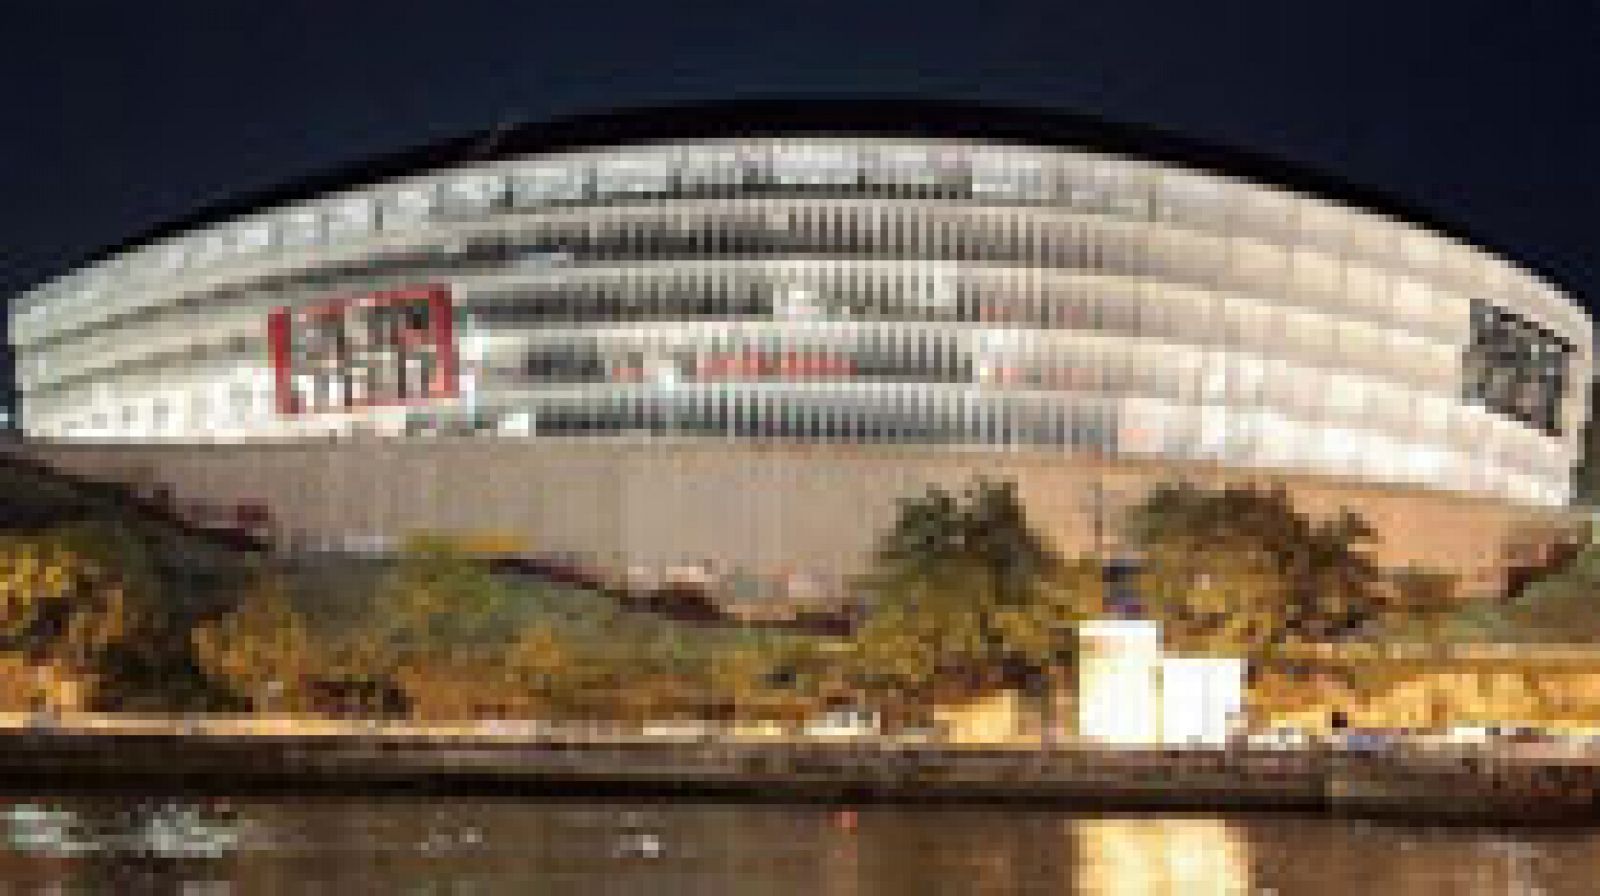 El estadio de San Mamés en Bilbao será una de las trece sedes de la Eurocopa 2020, en la que Londres acogerá las semifinales y la final, según decidió este viernes el Comité Ejecutivo de la UEFA reunido en Ginebra.

El estadio del Athletic Club acogerá tres partidos de la fase de grupos y un duelo de octavos de final.